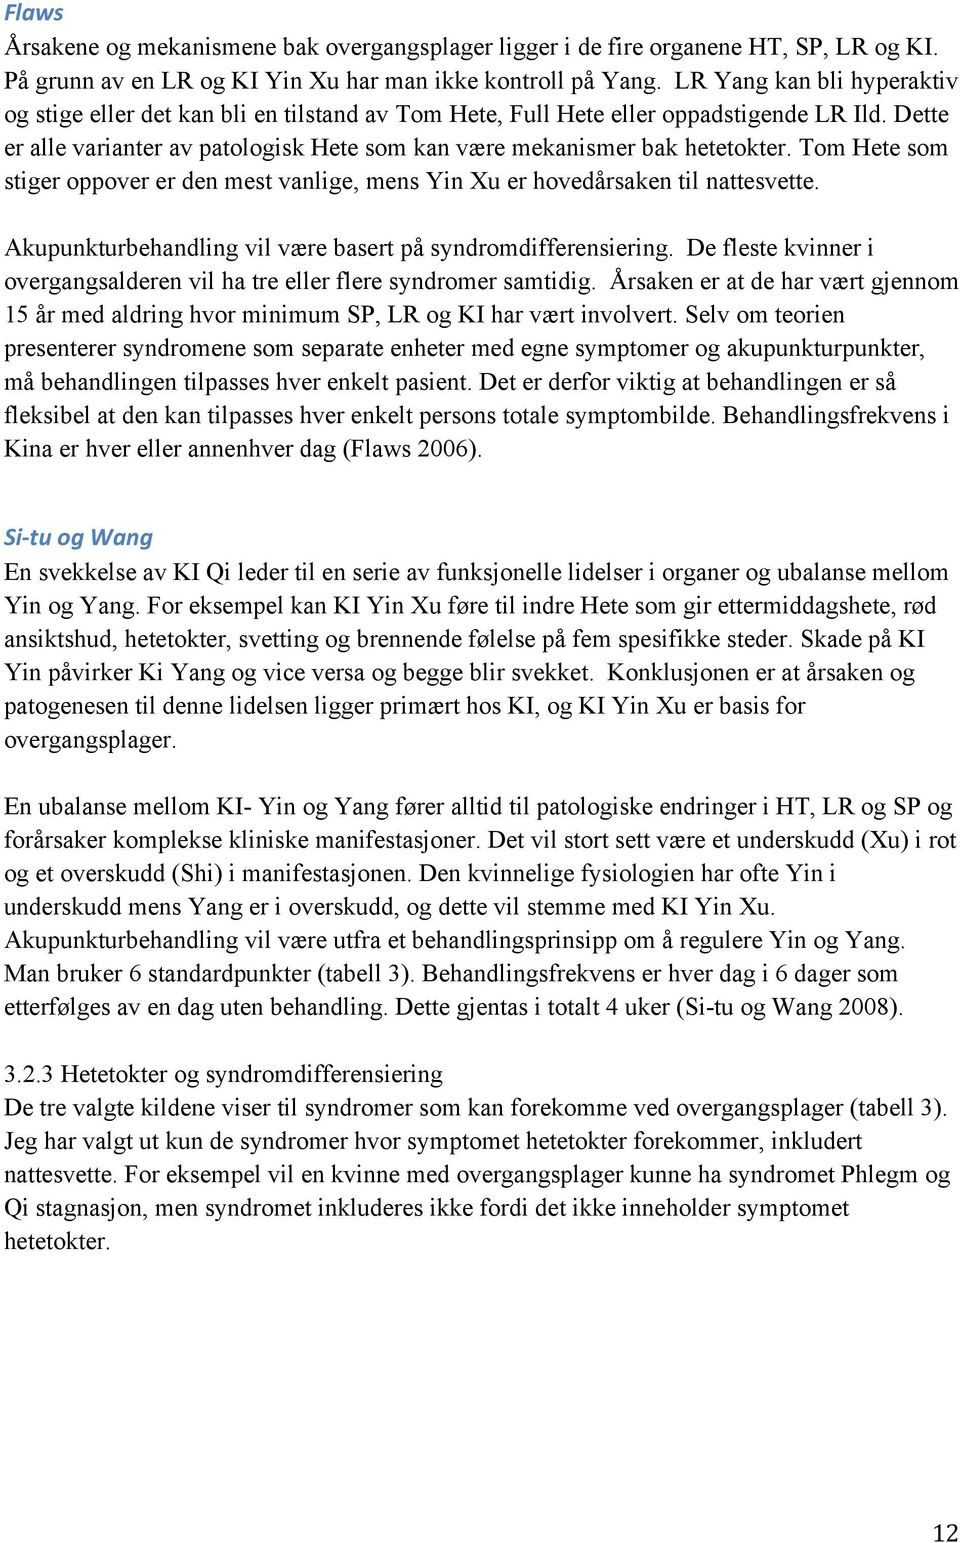 Tom Hete som stiger oppover er den mest vanlige, mens Yin Xu er hovedårsaken til nattesvette. Akupunkturbehandling vil være basert på syndromdifferensiering.